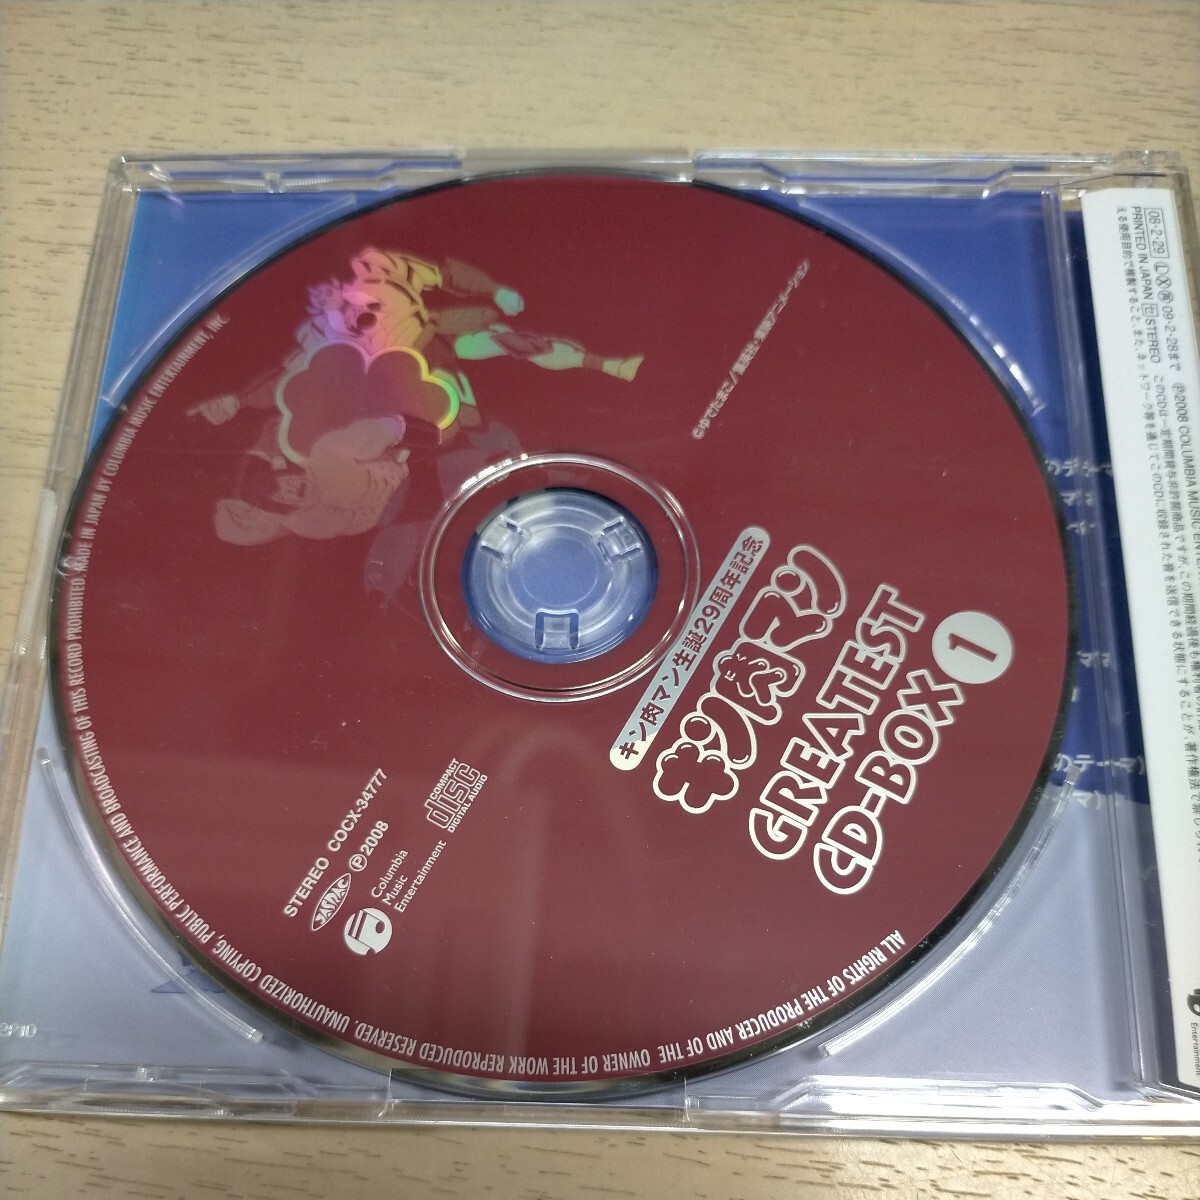  Kinnikuman рождение 29 anniversary commemoration GREATEST CD-BOX* б/у / воспроизведение не проверка / претензии не принимаются ./ текущее состояние доставка / кейс .. потертость немного царапина царапина / Shonen Jump 